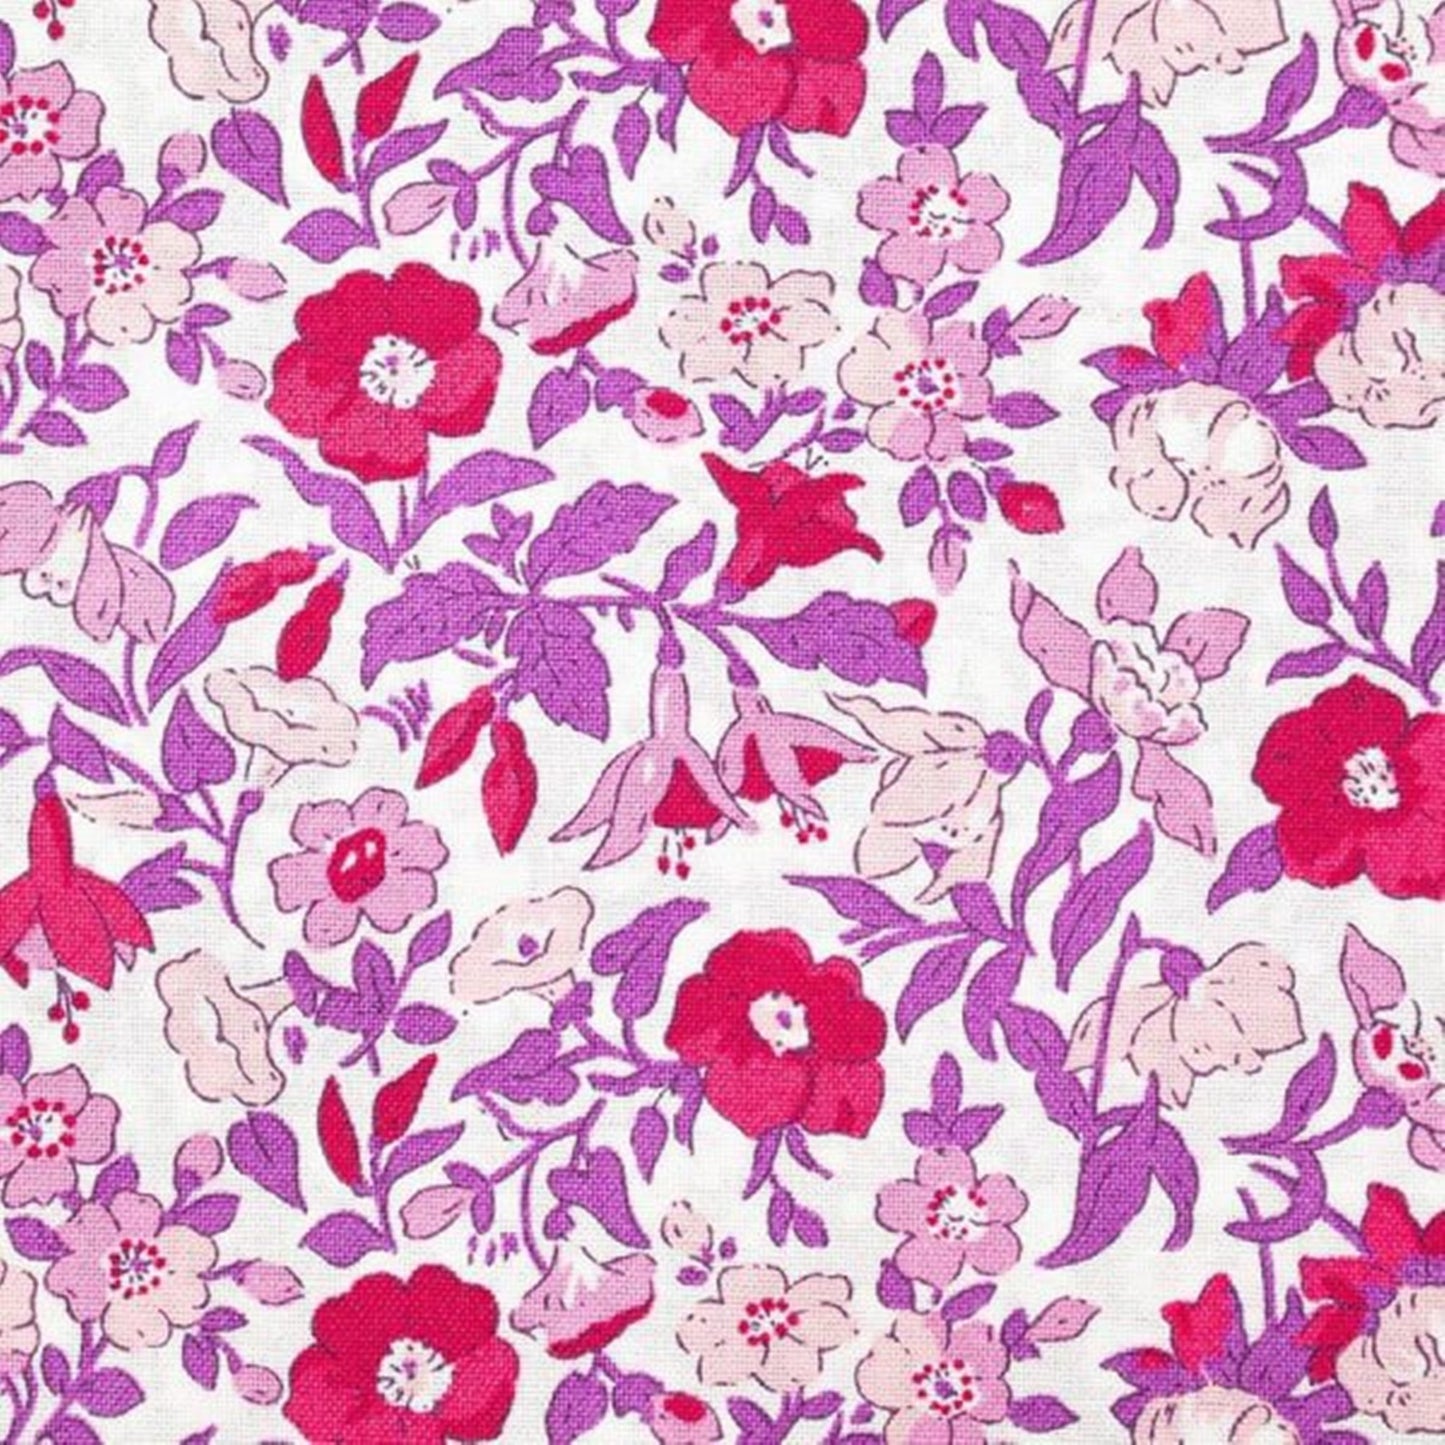 Liberty Flower Show Botanical Jewel bundle B - 5 Fat Quarters cotton quilt fabric